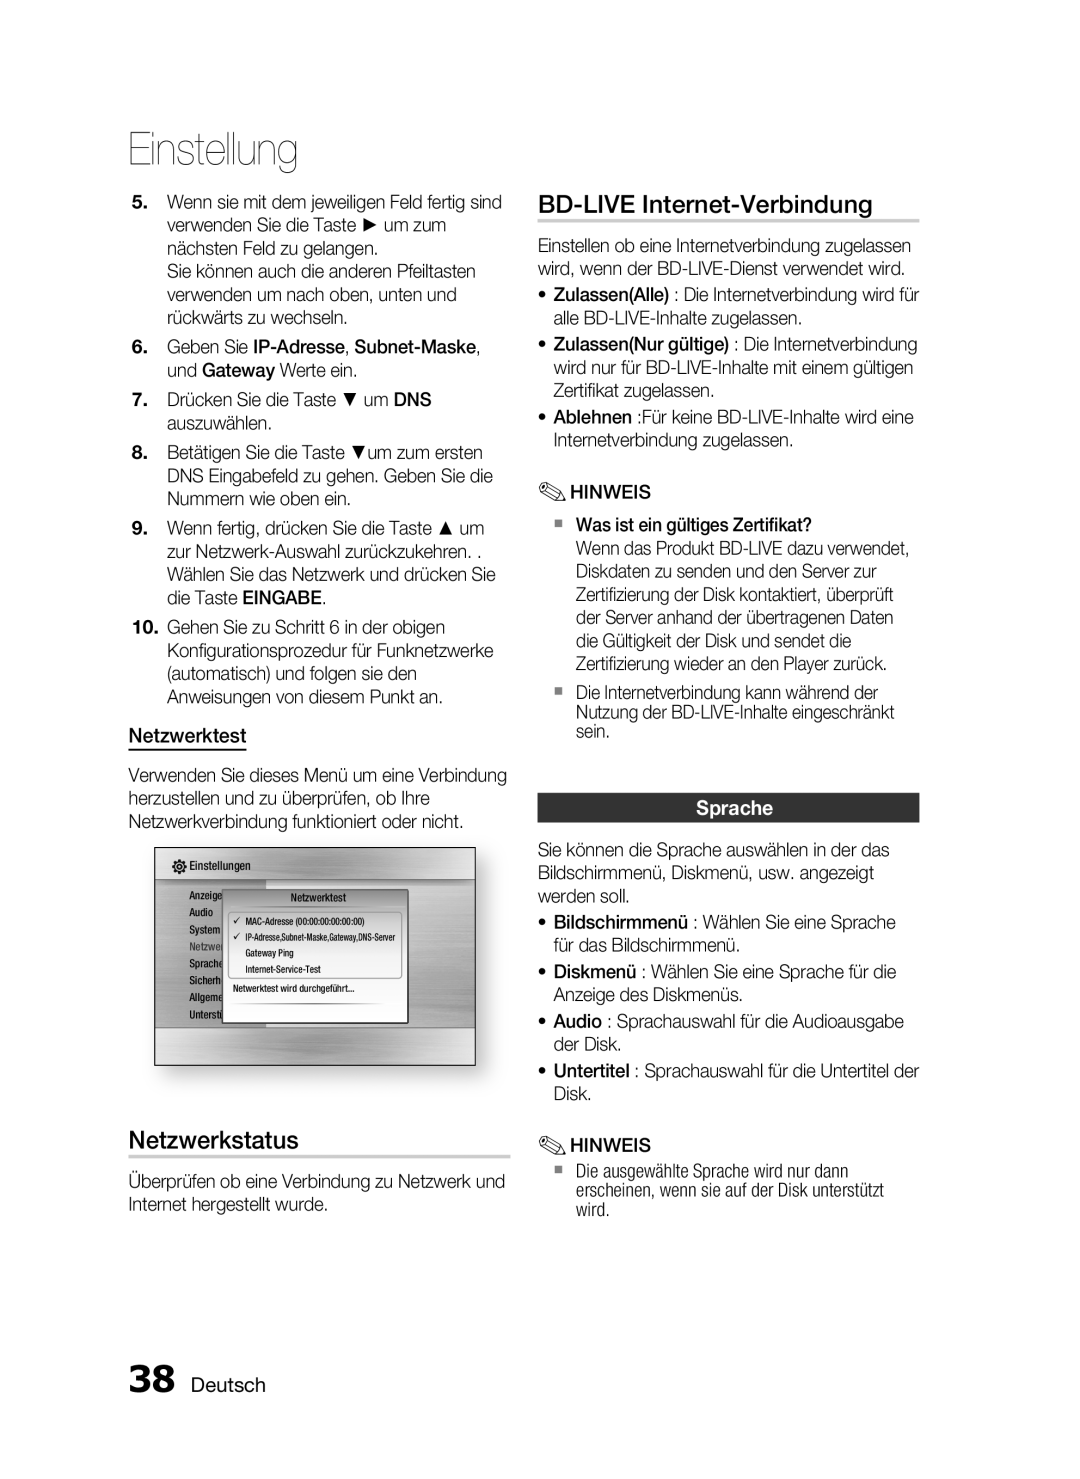 Samsung HT-C6200/XEF manual Netzwerkstatus, BD-LIVE Internet-Verbindung, Netzwerktest, Sprache, Deutsch, Einstellung 